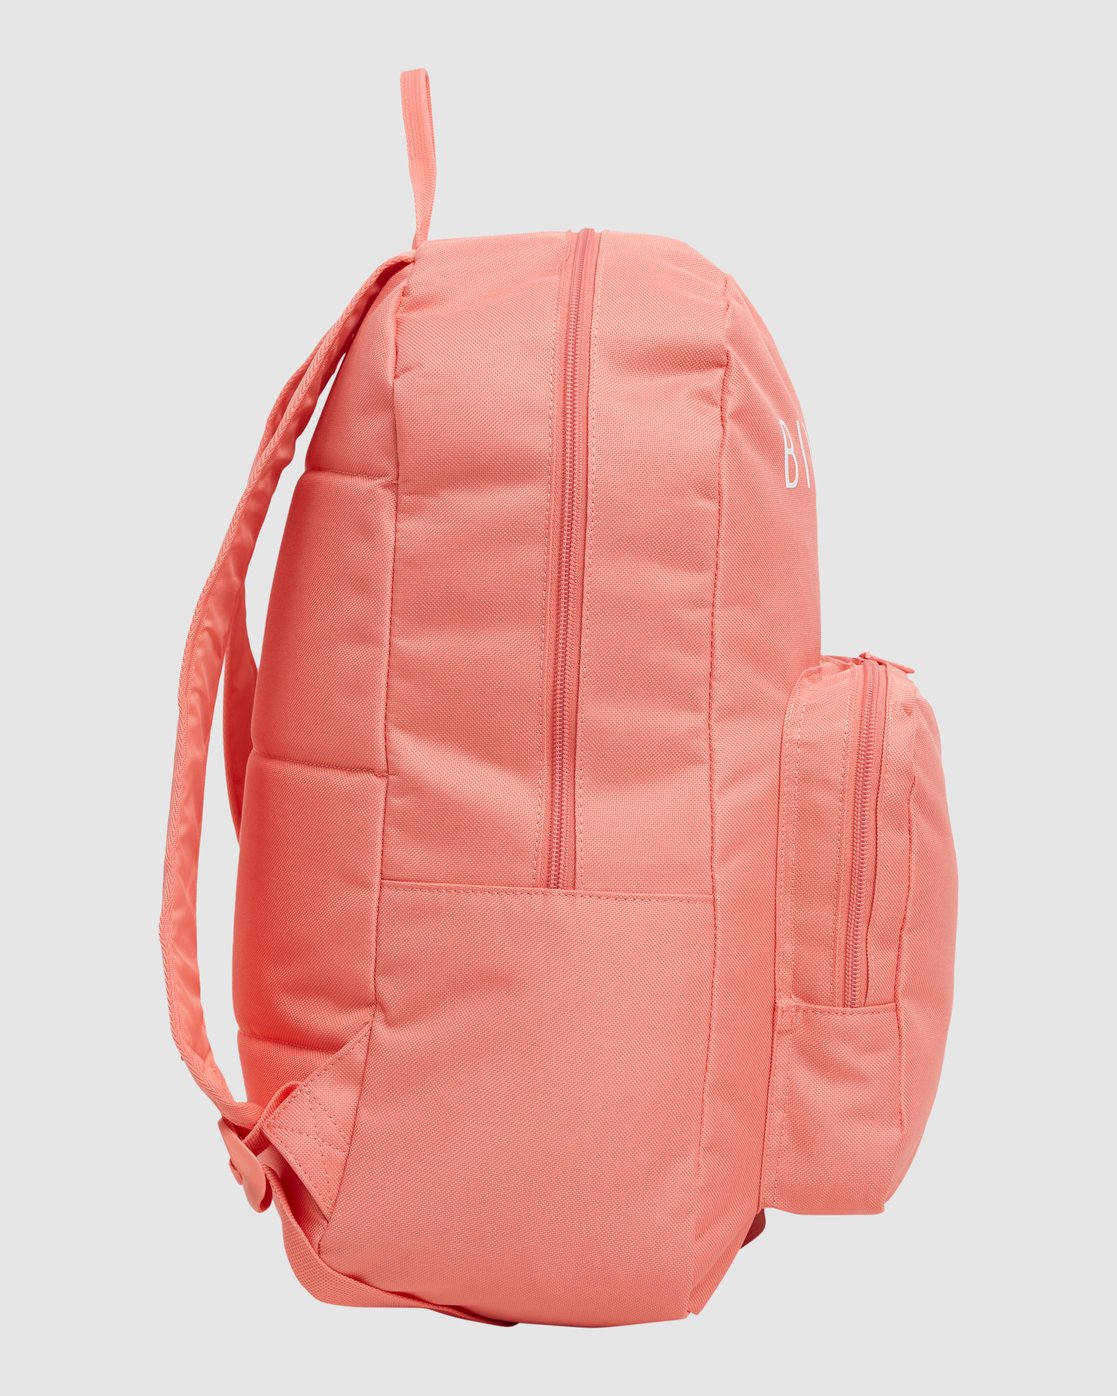 Infinity Backpack